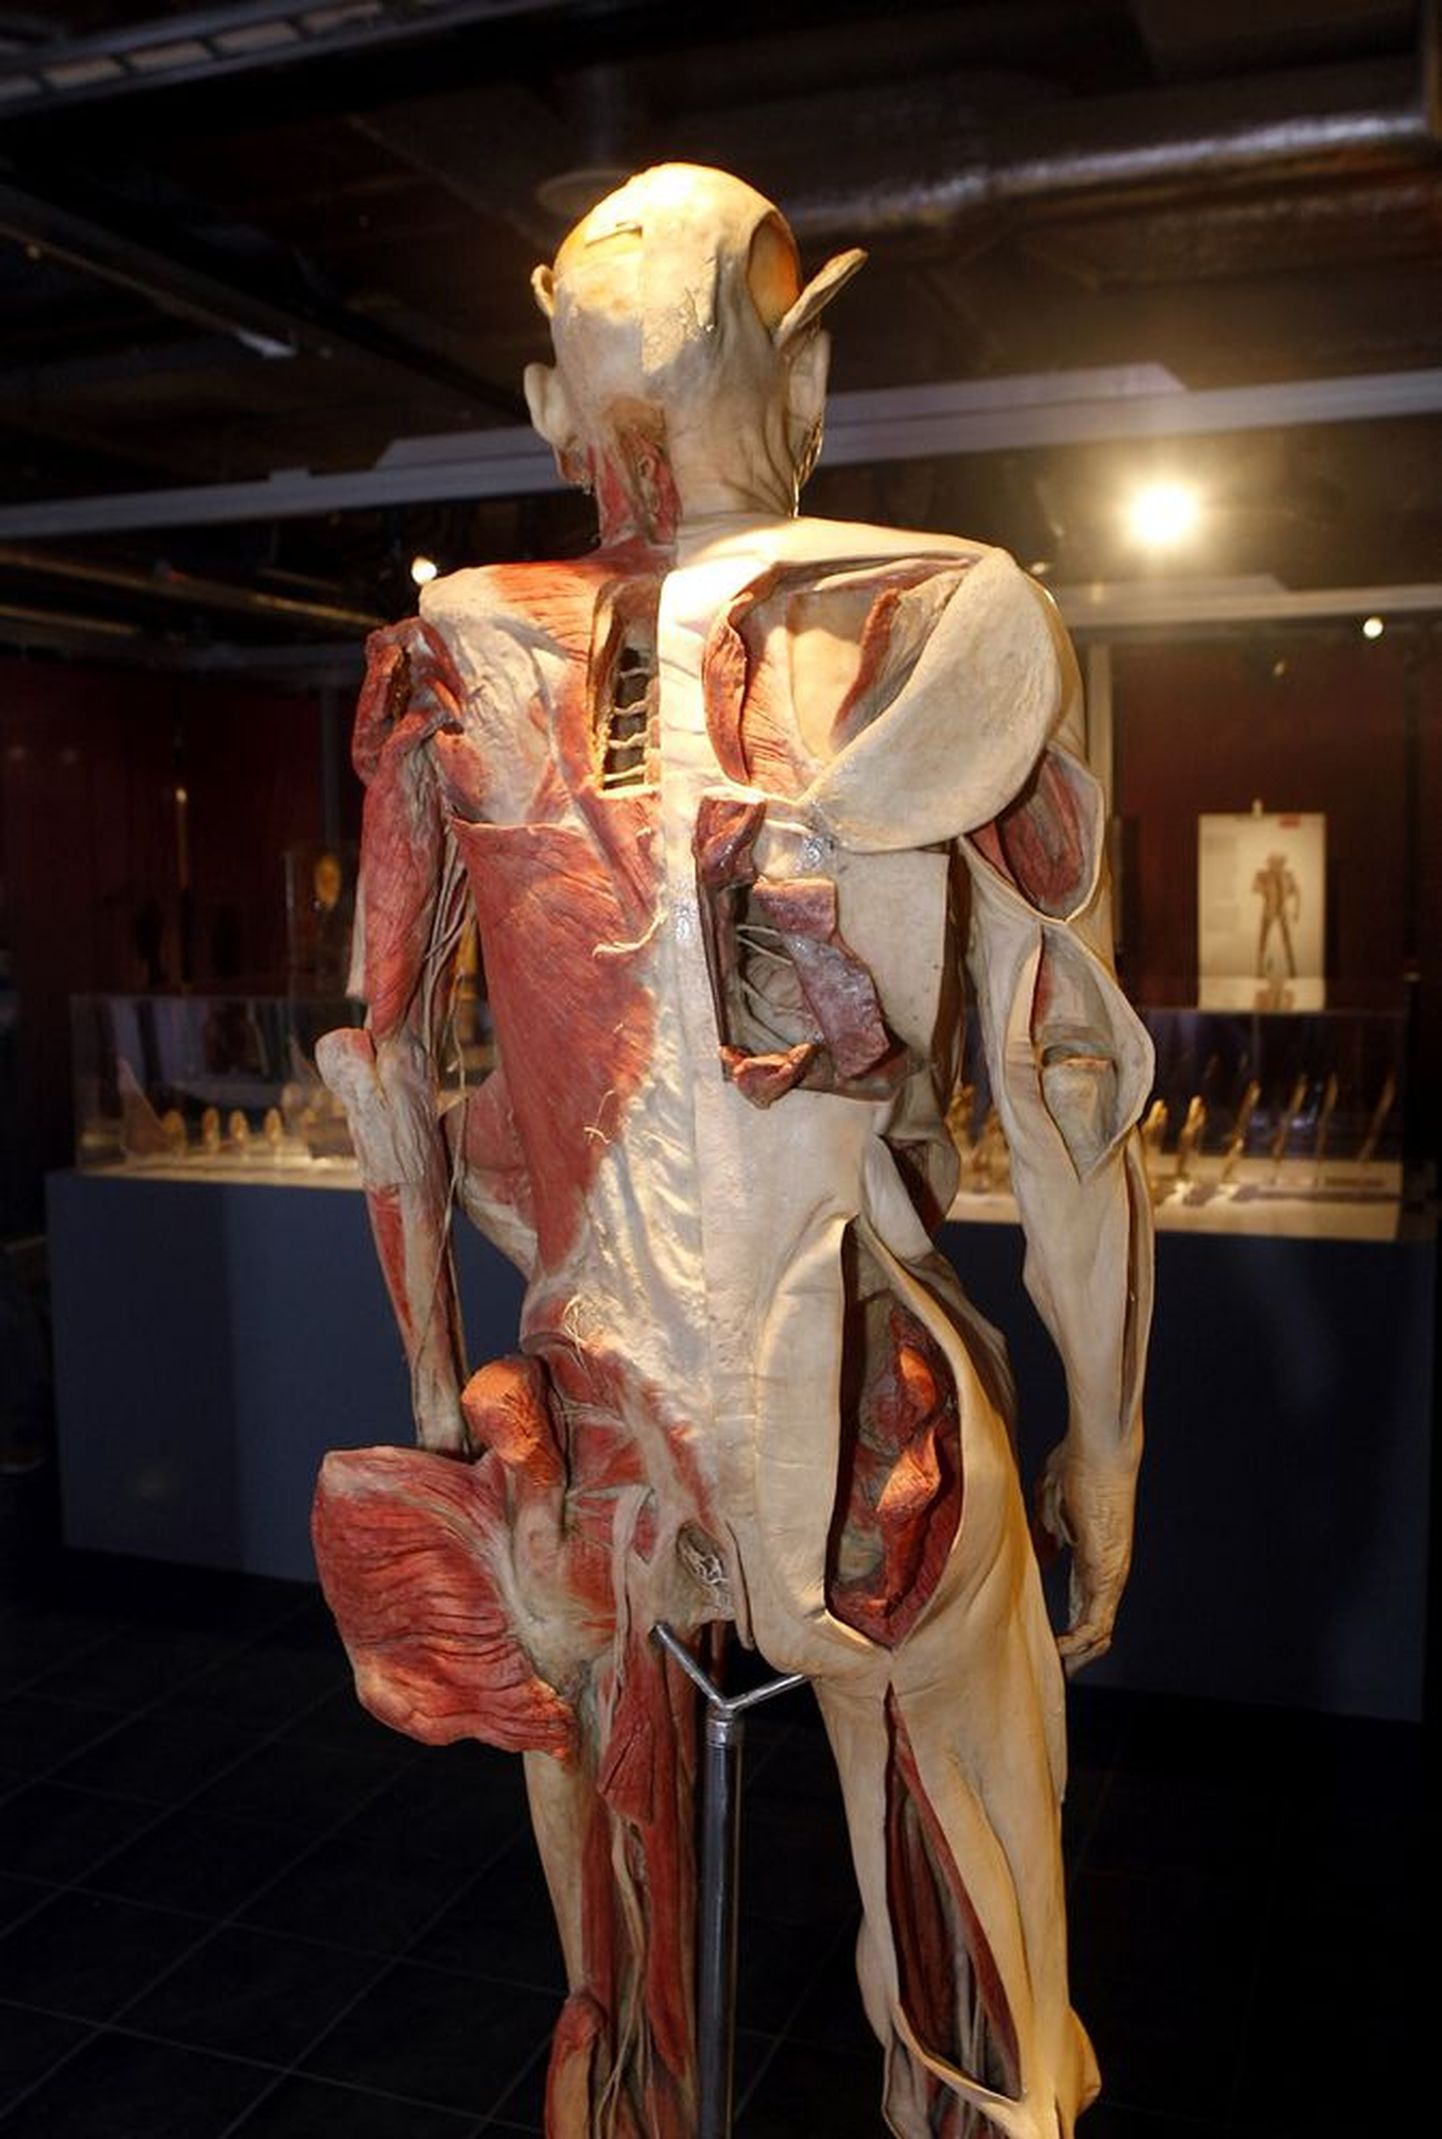 Näitusel «Bodies revealed» paljastatakse inimkeha sisemus - 
Solarise näitusesaalis on esil maailma menukaim rändnäitus, kus saab näha palsameeritud inimkehasid, neist välja võetud organeid, luustikke ja isegi surnud looteid.